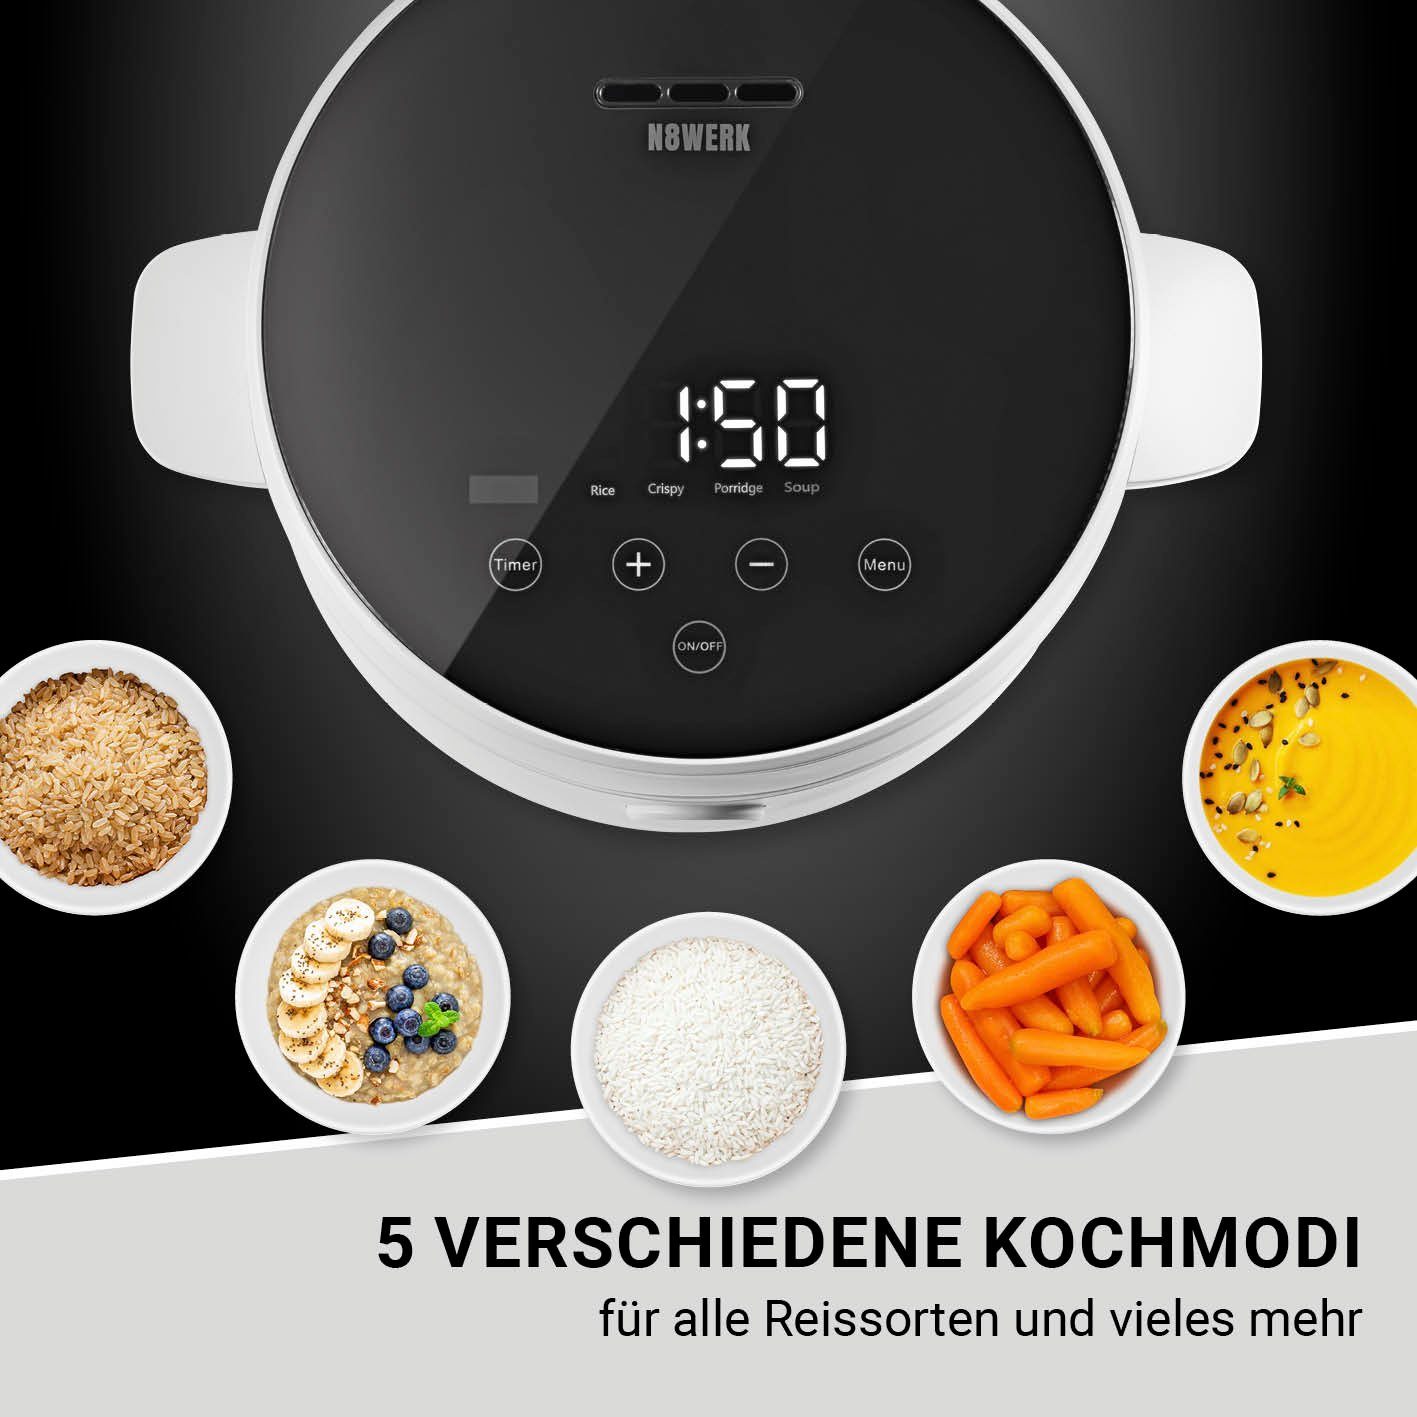 Reiskocher N8WERK Reiskocher - Digitaler weiß